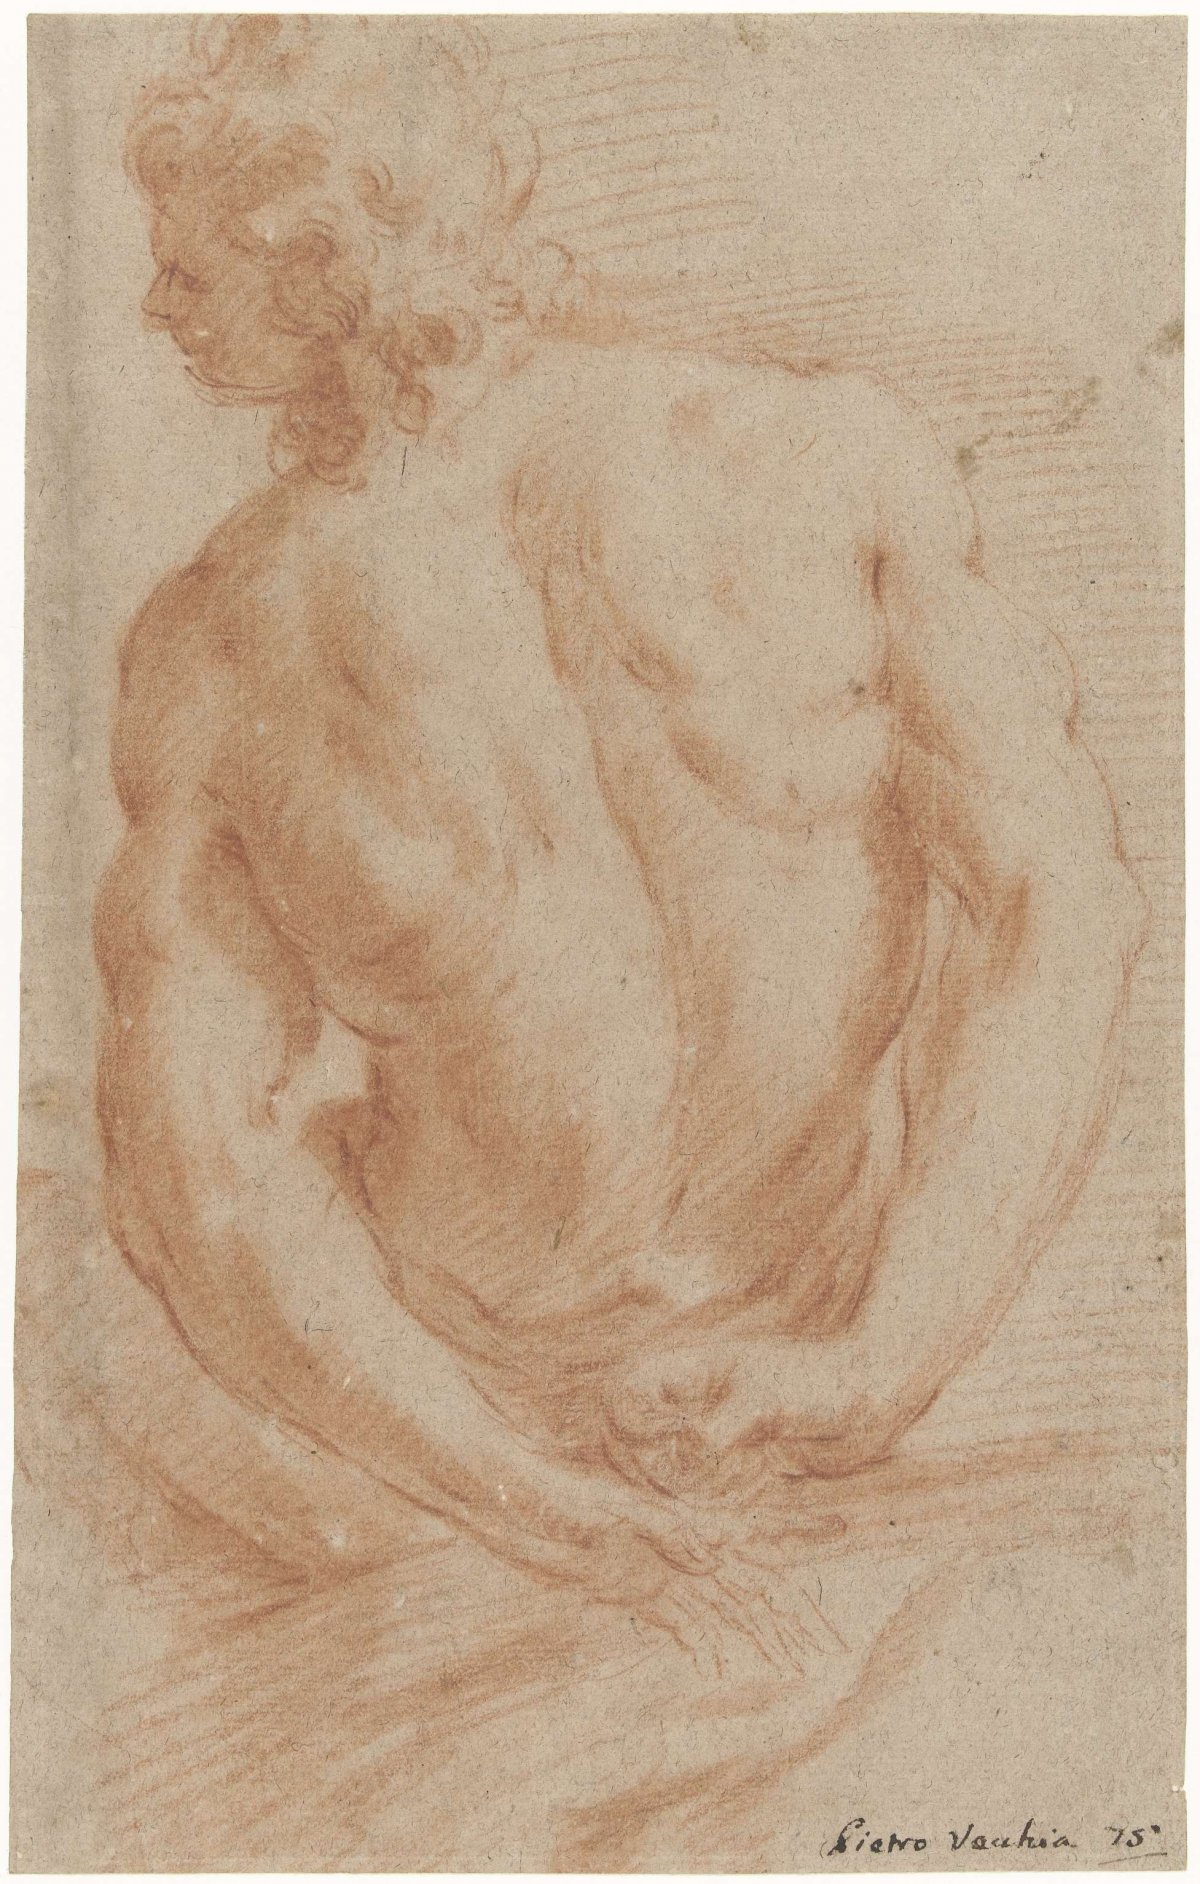 Study of a male nude, Pietro della Vecchia, 1643 - 1663